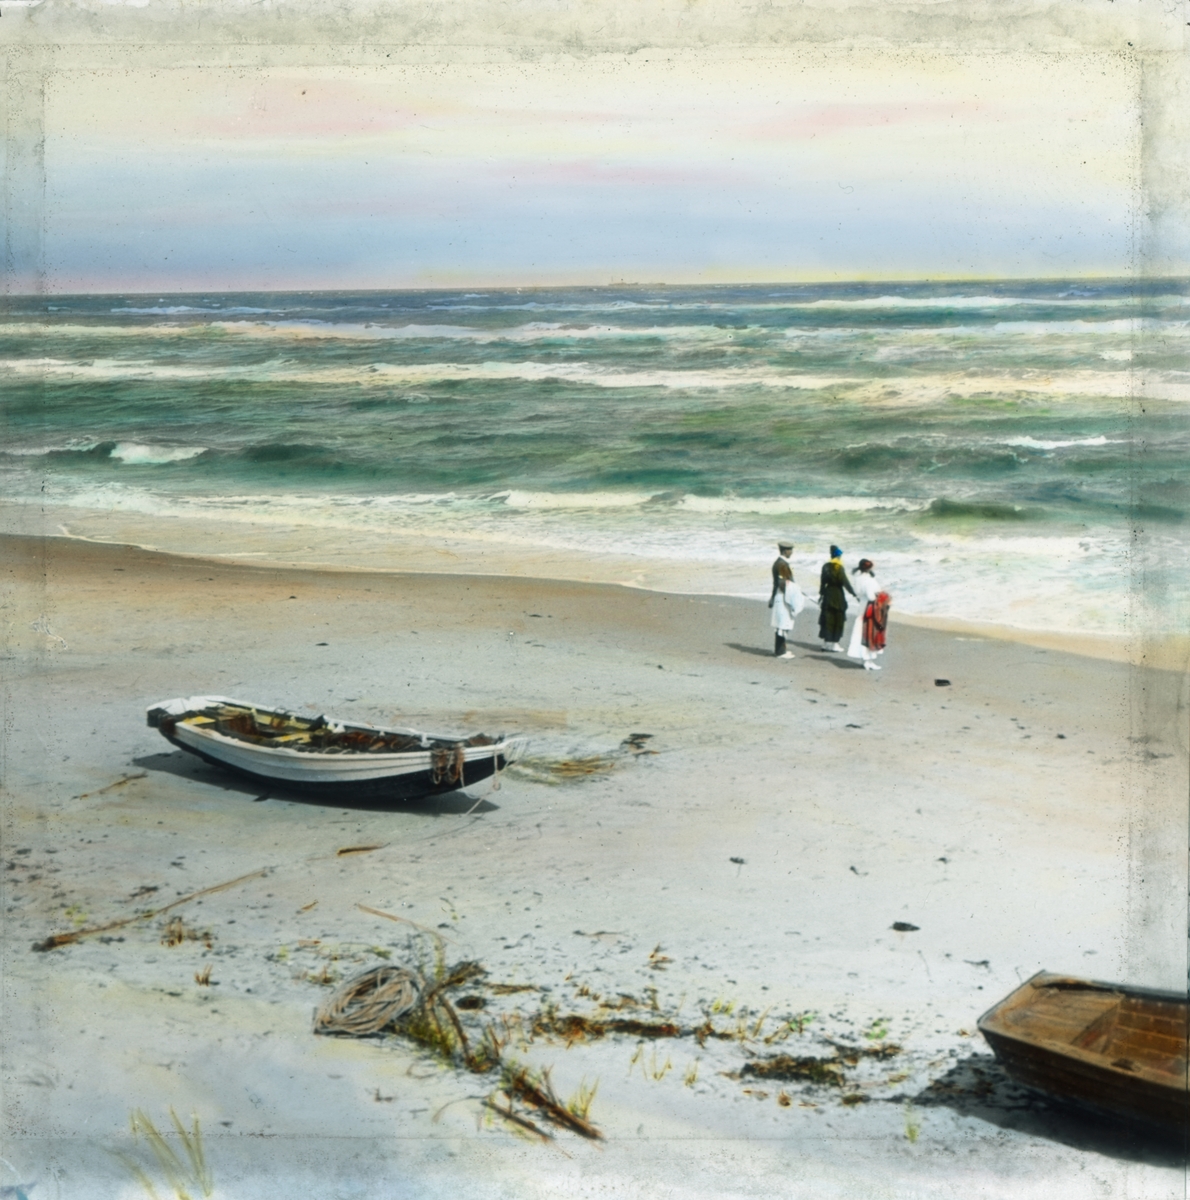 Håndkolorert dias. To kvinner og en mann ser utover havet på en sandstrand. I forgrunnen ligger to robåter i sanden.